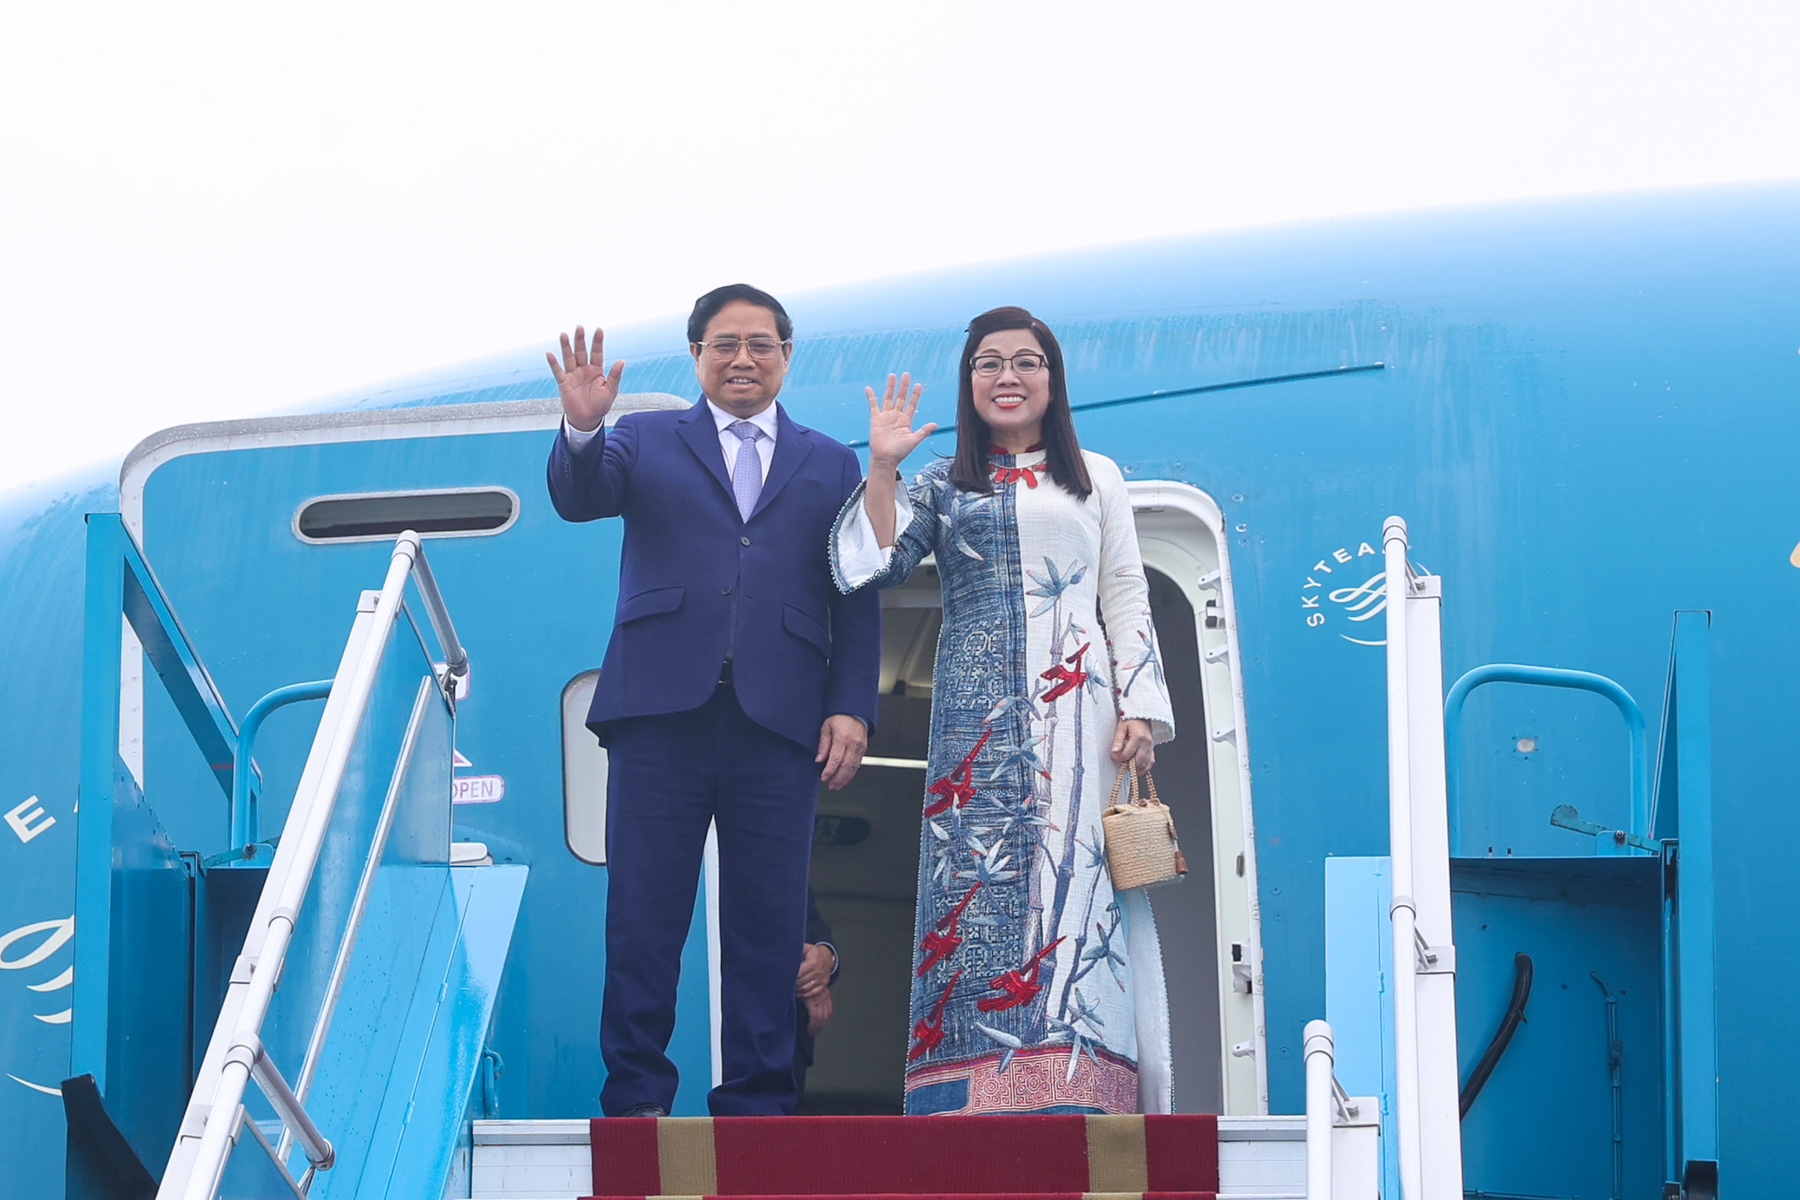 Đây là chuyến thăm chính thức đầu tiên của Thủ tướng Chính phủ Phạm Minh Chính đến Australia và New Zealand trên cương vị mới, là chuyến thăm đầu tiên của Thủ tướng Chính phủ Việt Nam đến hai nước sau hơn 7 năm qua. Ảnh VGP/Nhật Bắc